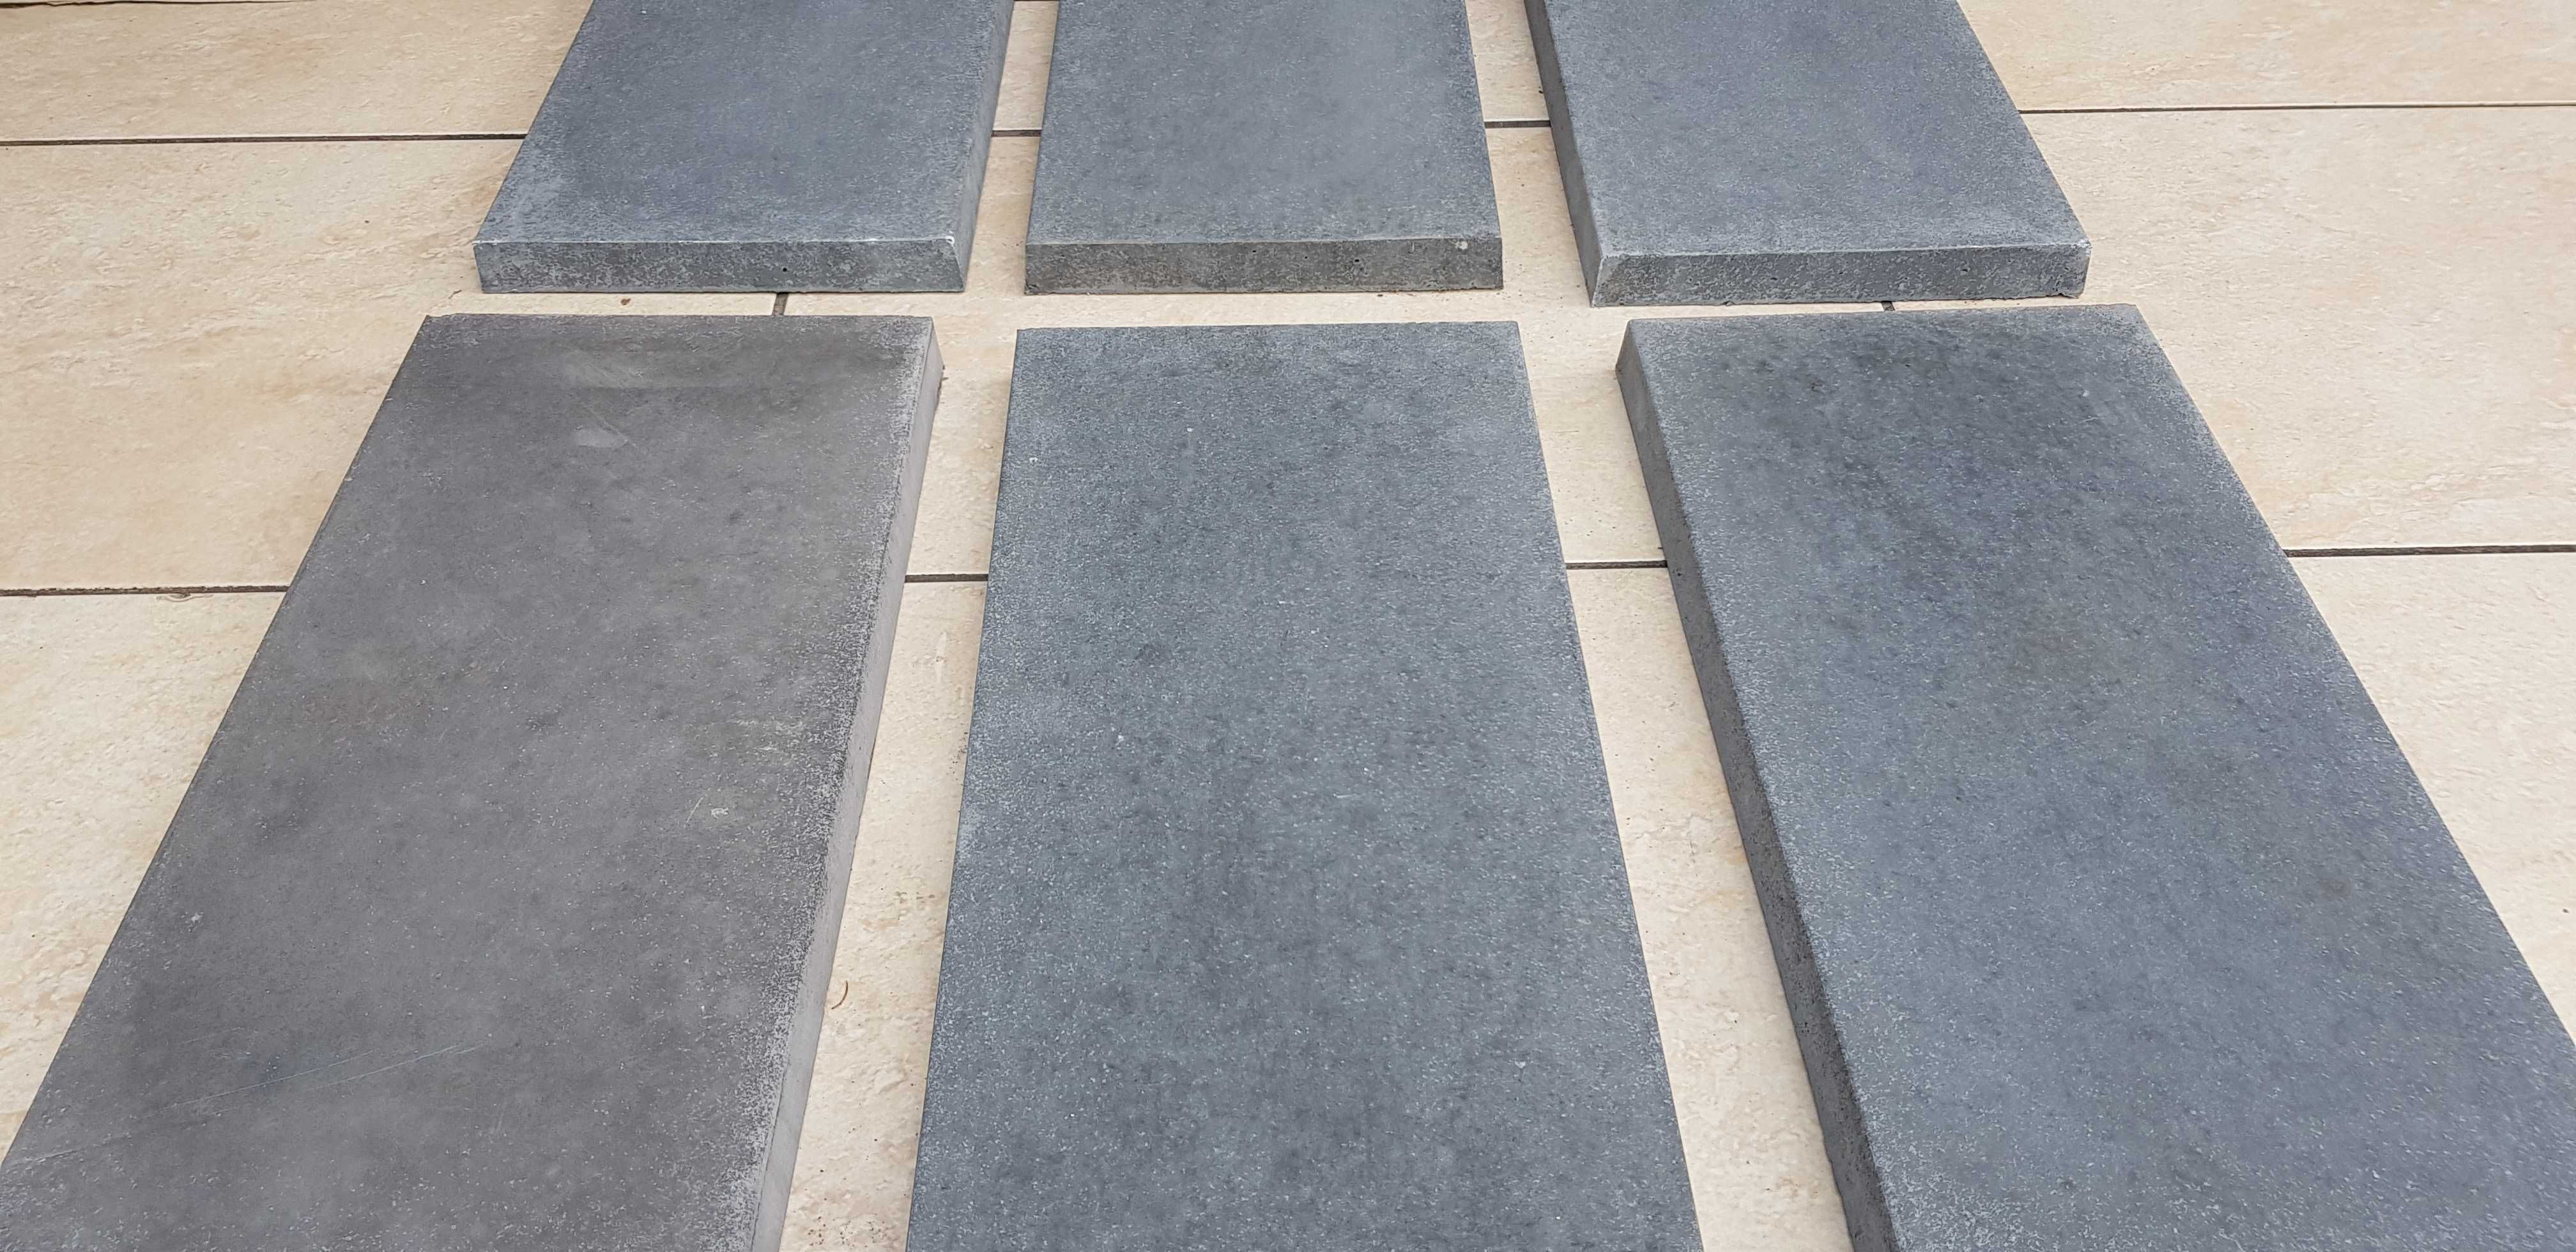 Daszki betonowe płaskie 24x50 na murki słupki ogrodzeniowe PRODUKCJA